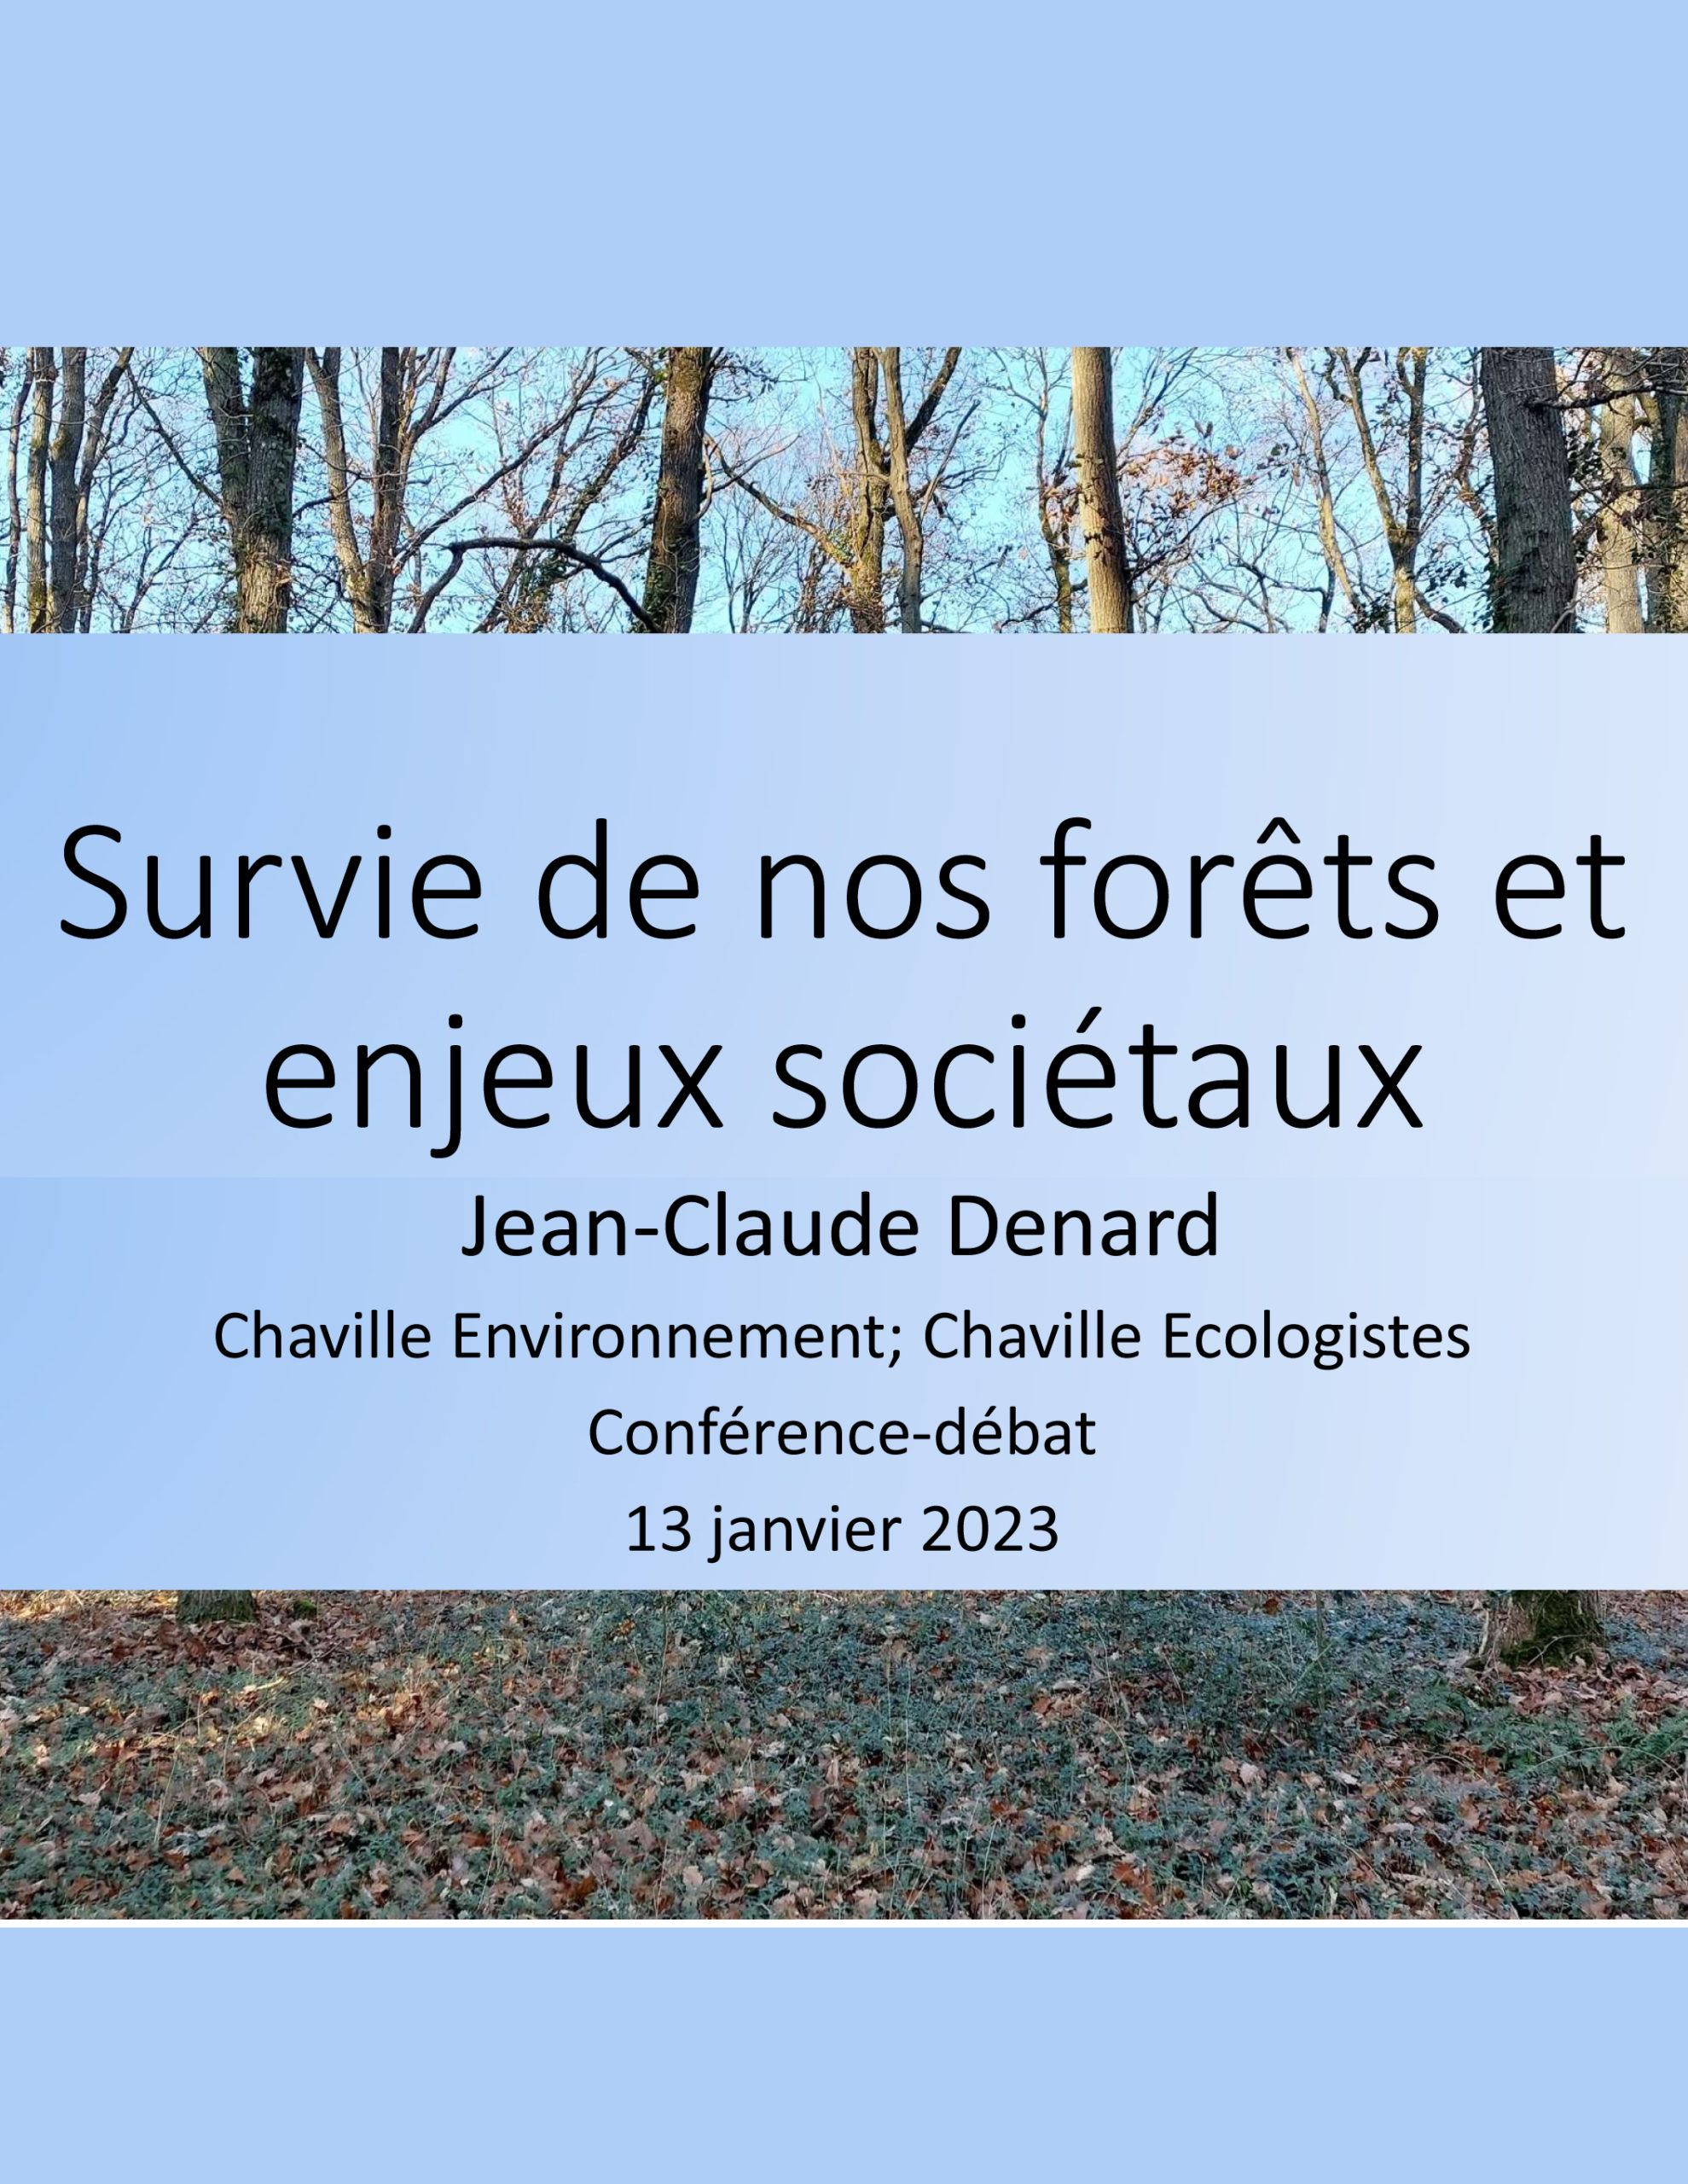 You are currently viewing Conférence-débat  » Survie de nos forêts et enjeux sociétaux  » 13 Janvier 2023